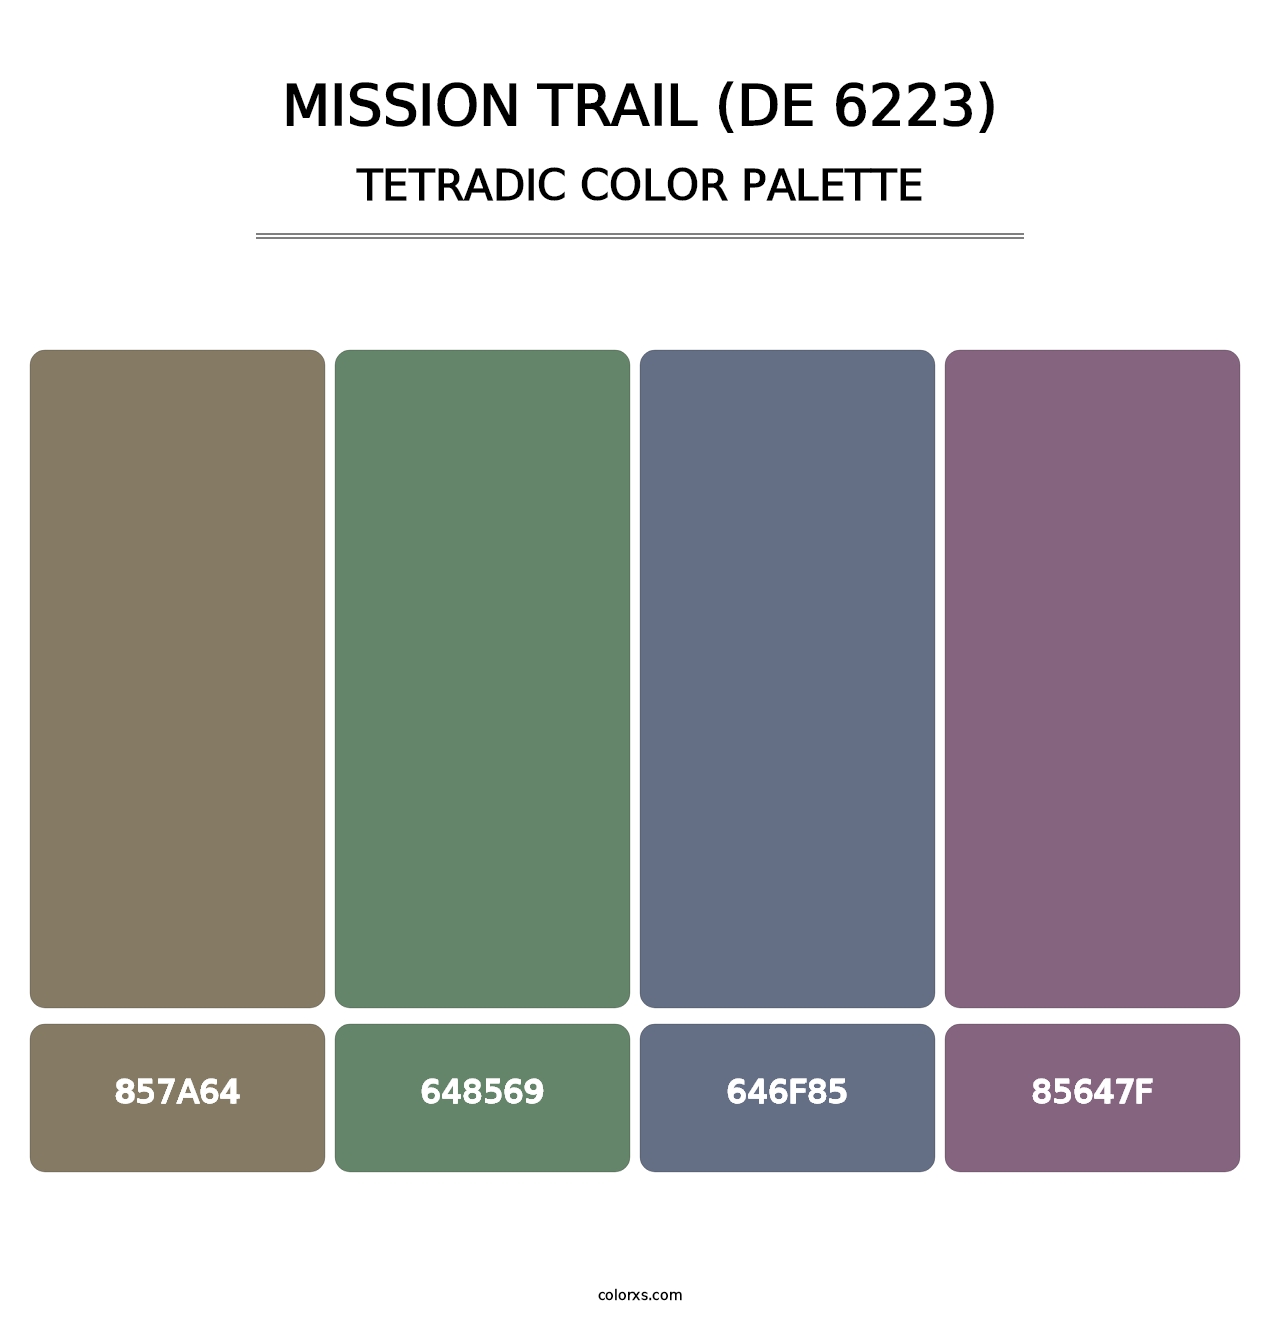 Mission Trail (DE 6223) - Tetradic Color Palette